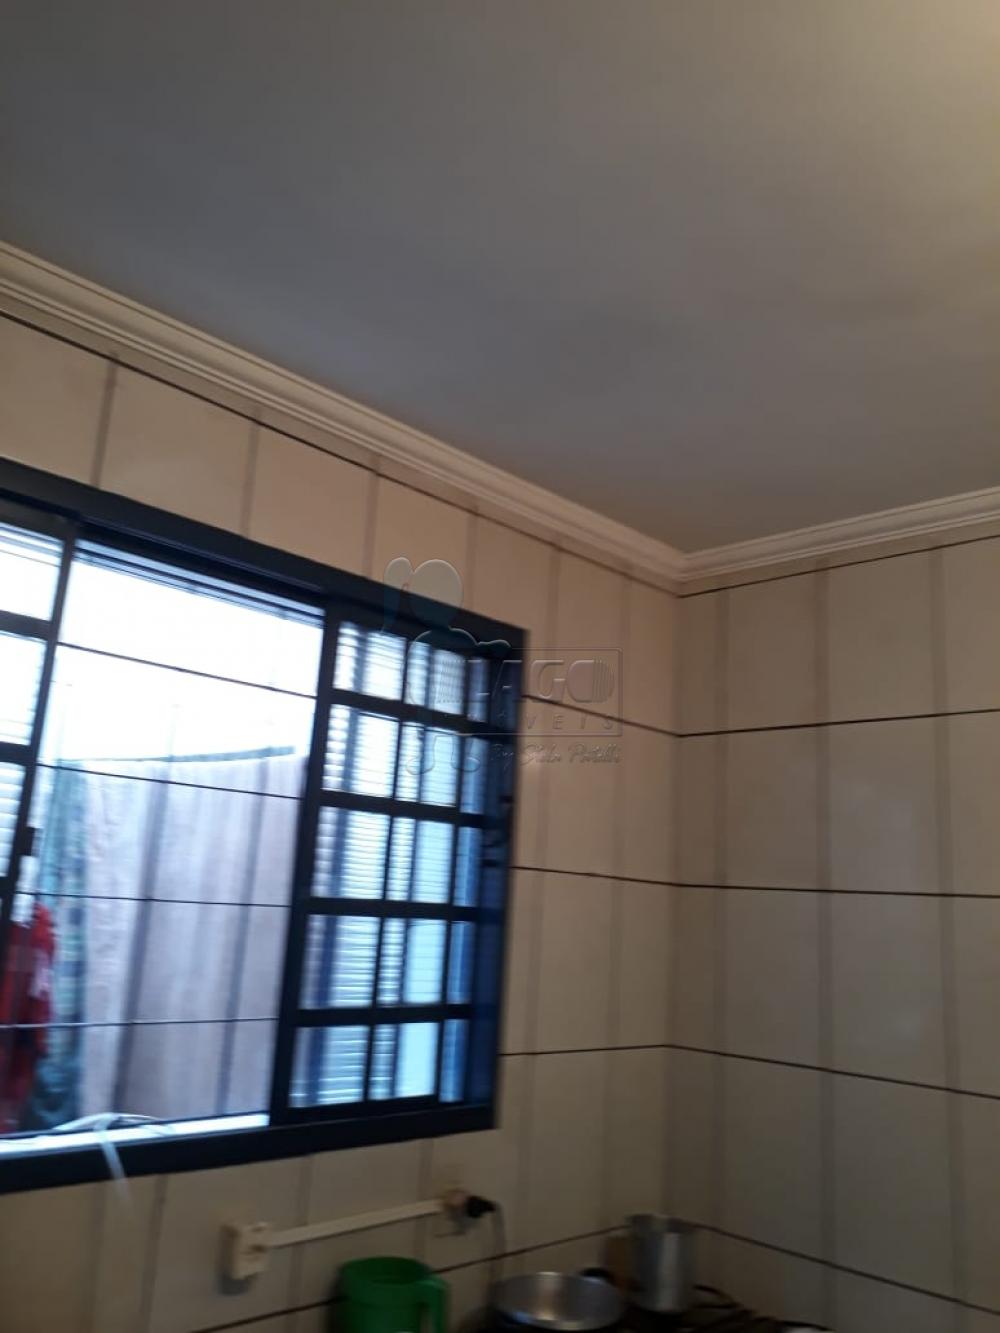 Alugar Casas / Padrão em Ribeirão Preto R$ 700,00 - Foto 10